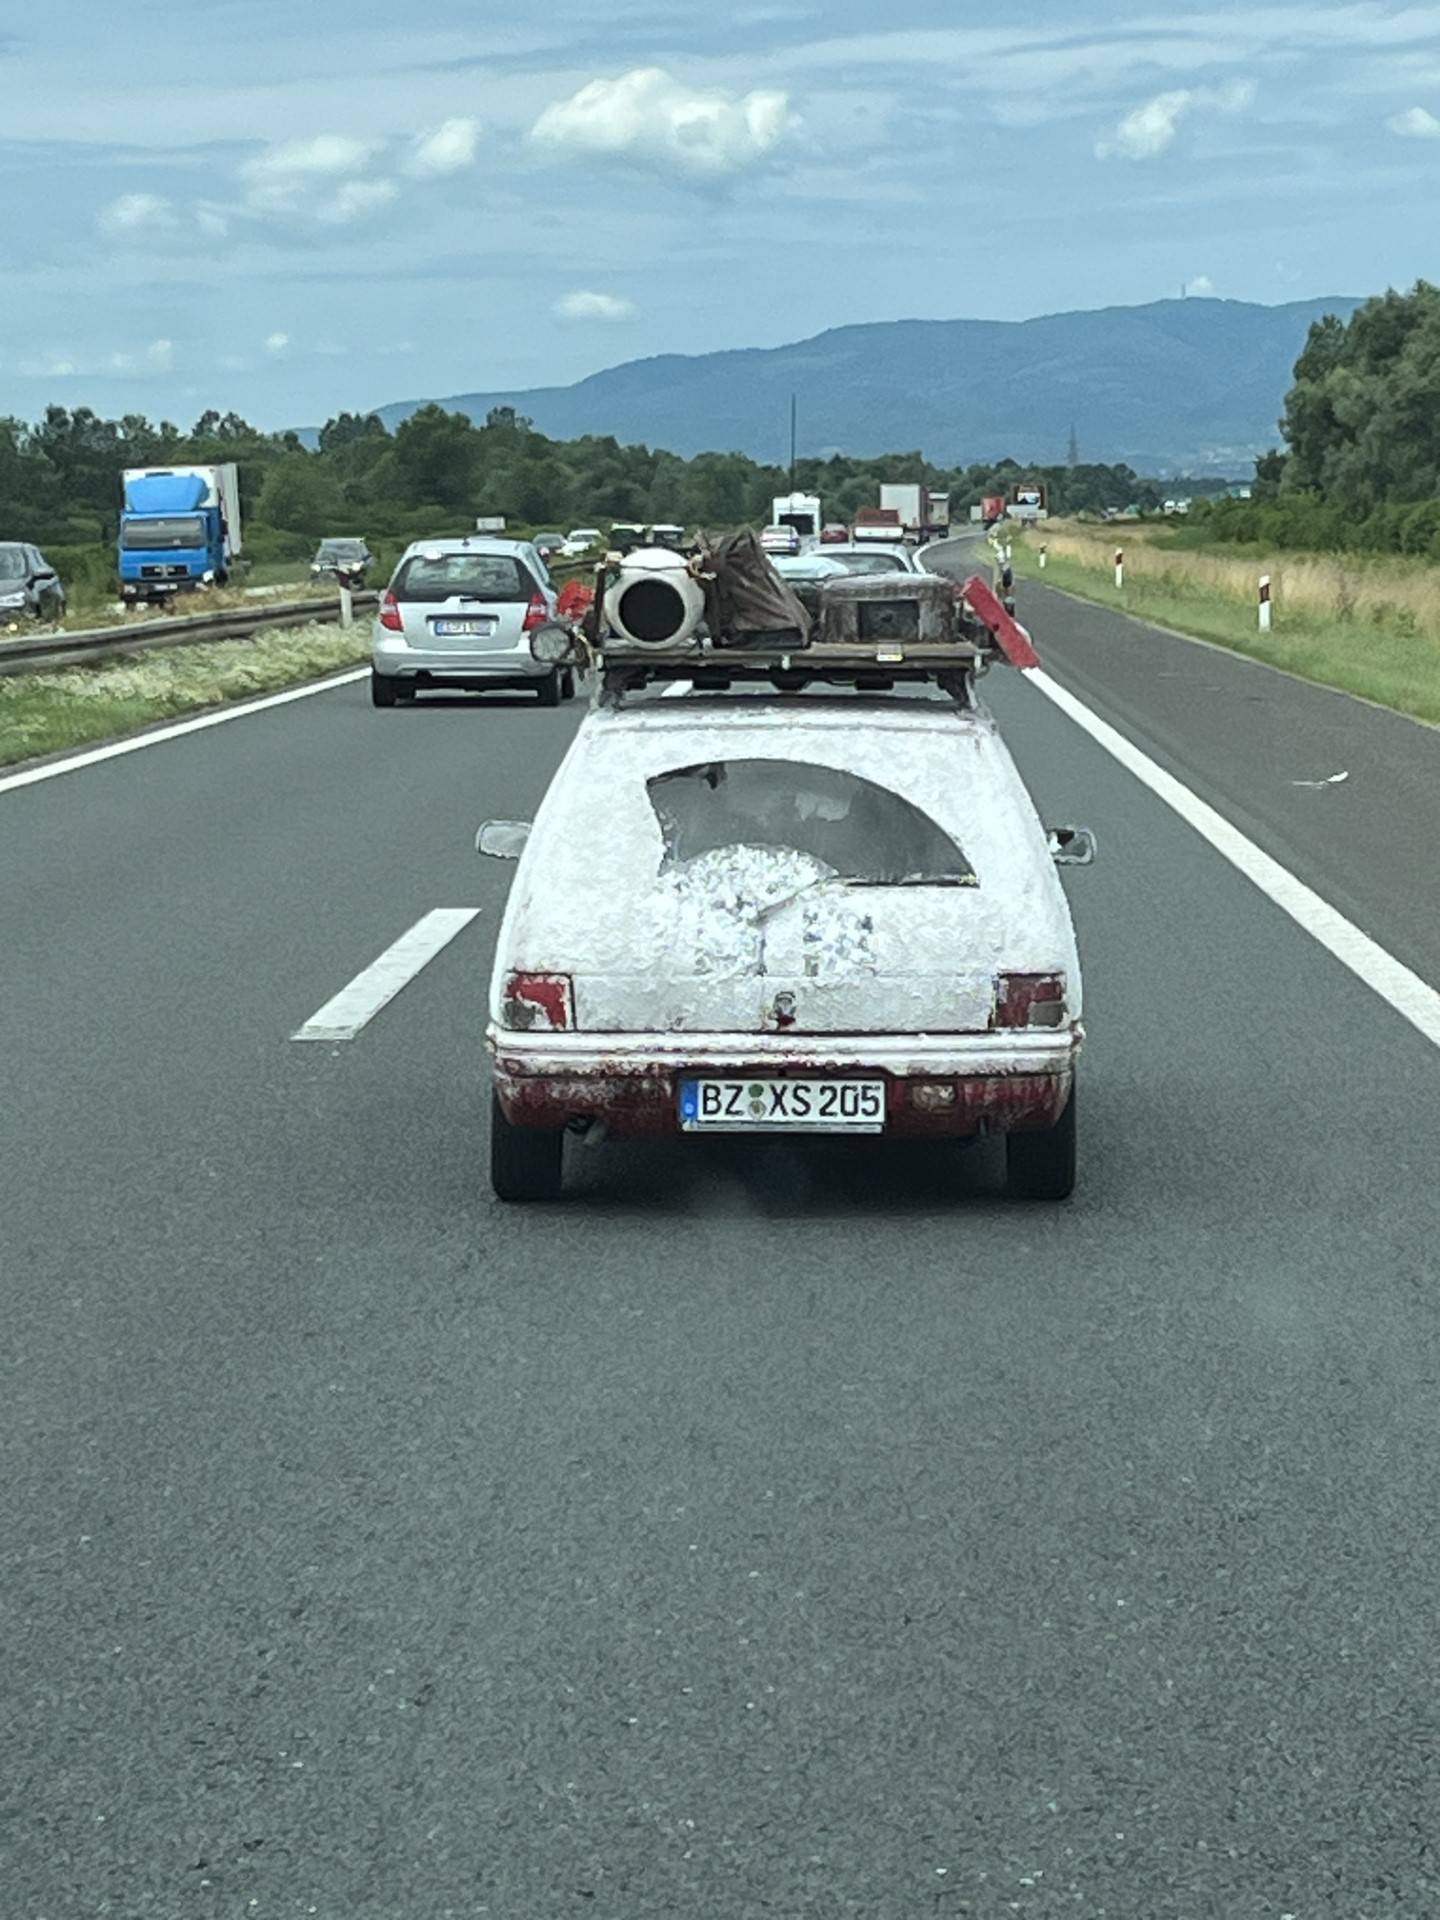 Na hrvatskim cestama viđate čudne aute? Hrđave krame su dio relija. Ali brzina nije bitna